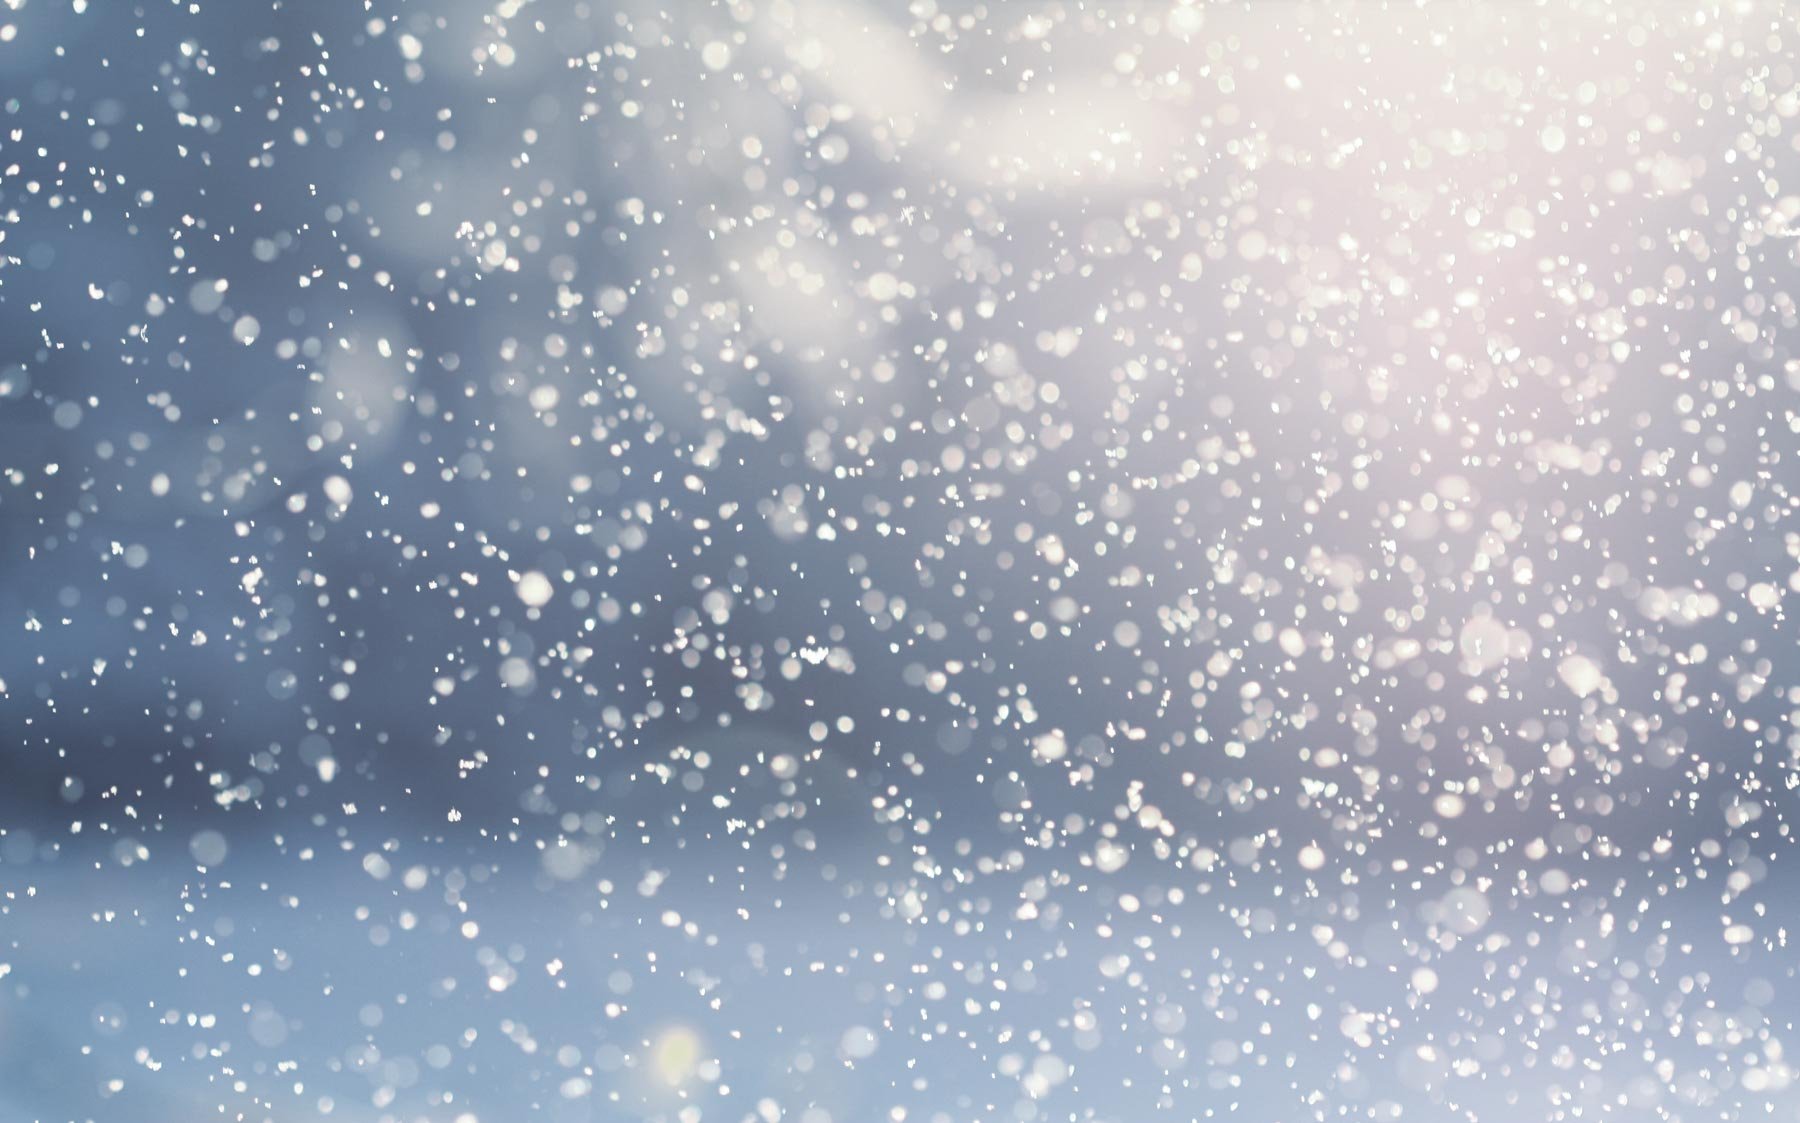 Погода в Казахстане: в столице ожидается дождь со снегом